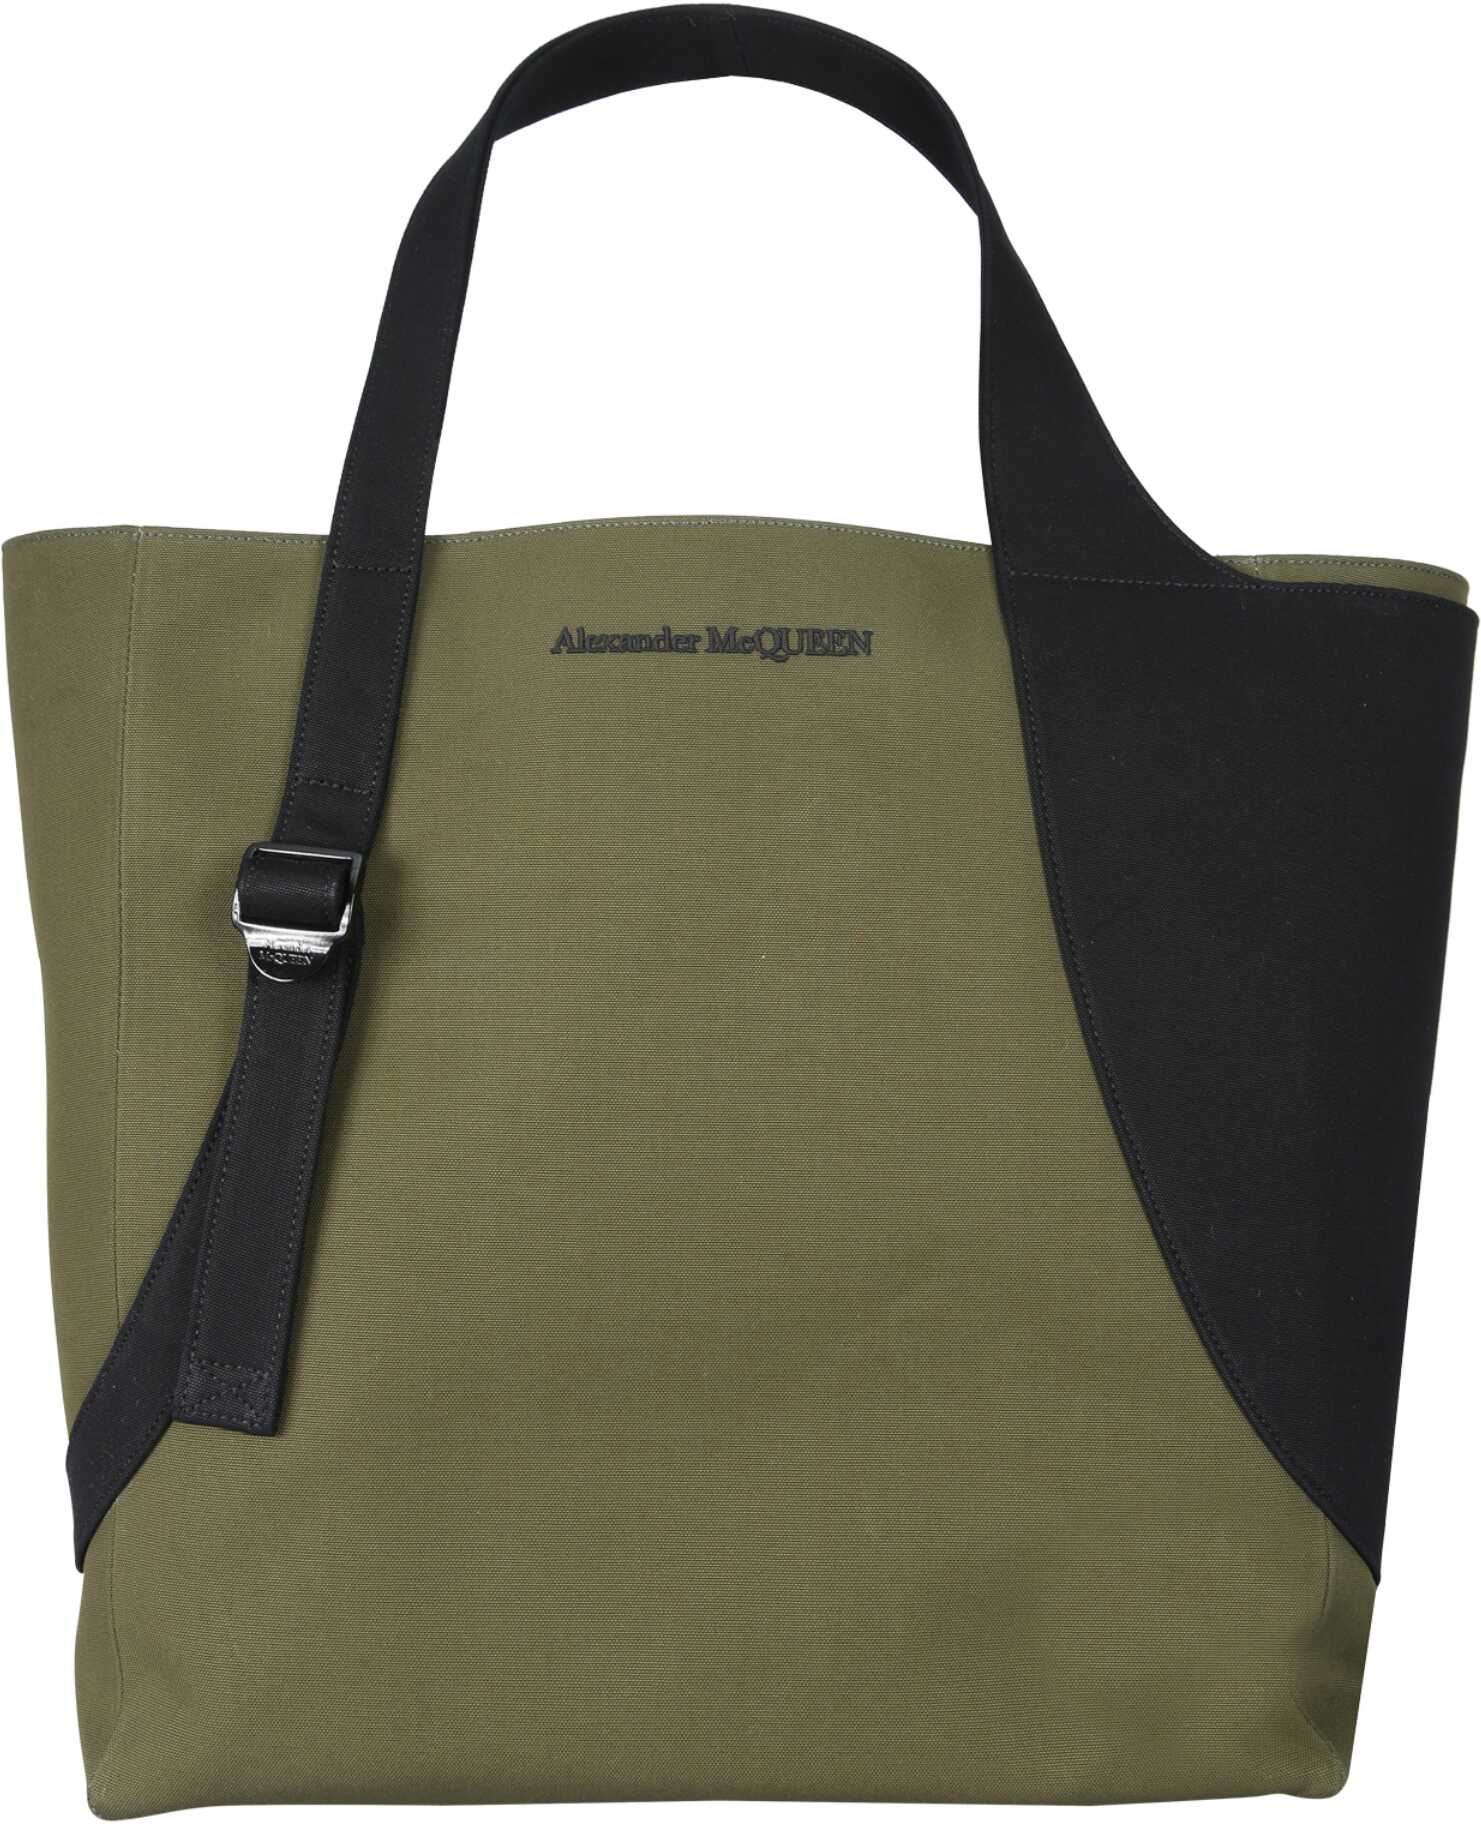 Alexander McQueen Harness Tote Bag GREEN Alexander McQueen